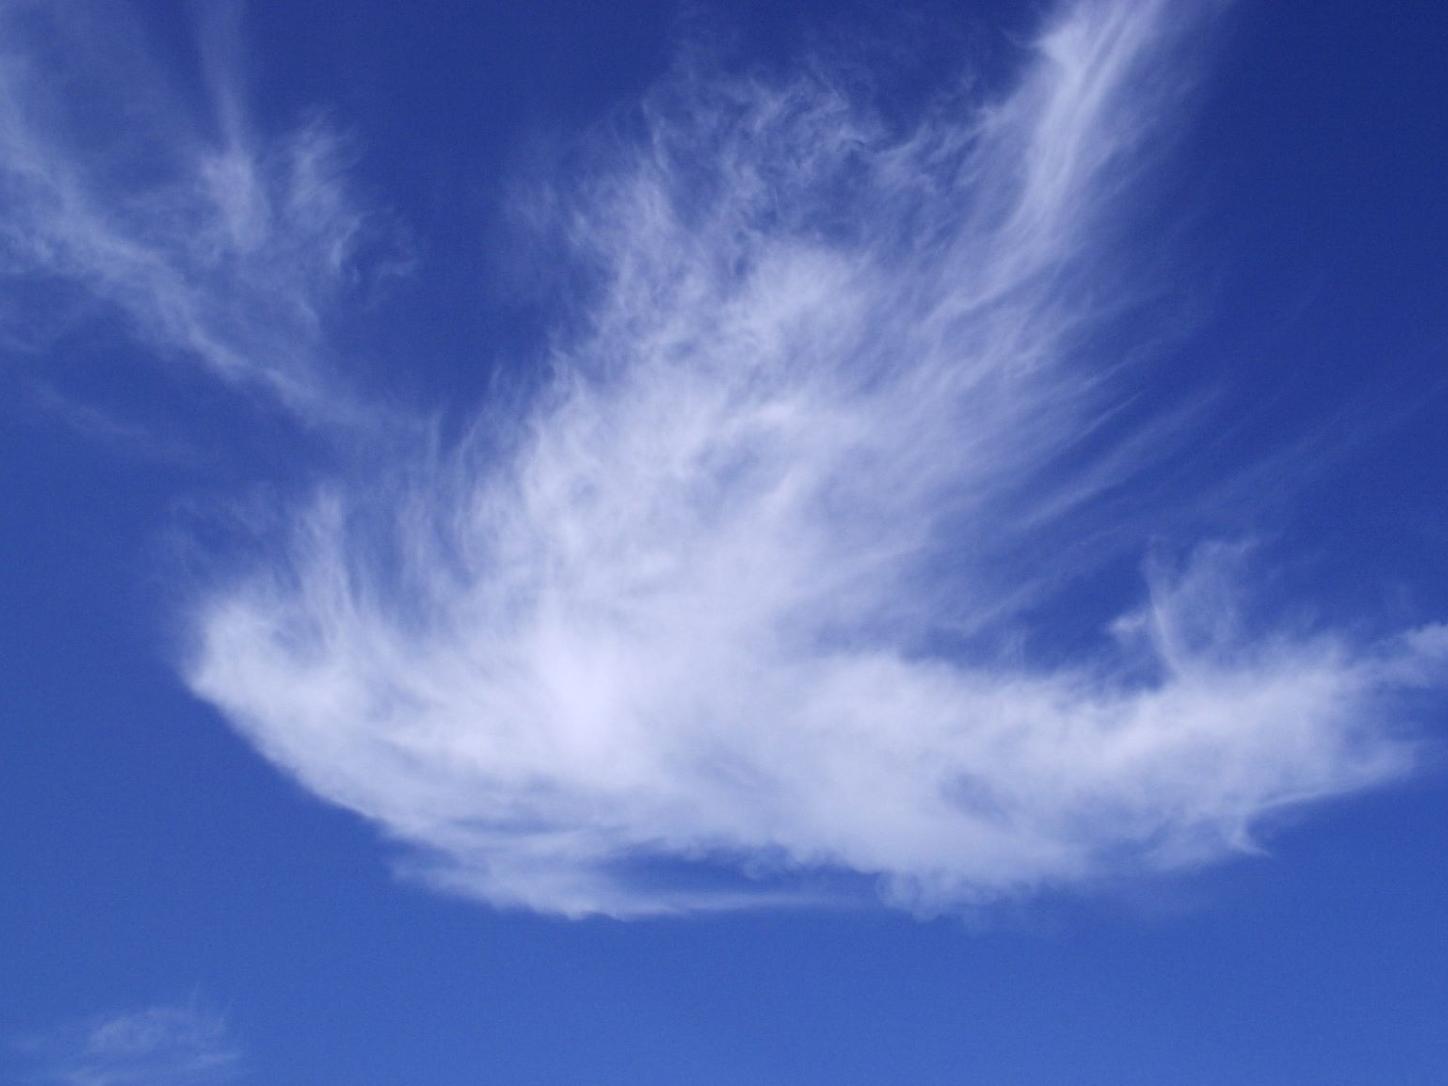 Man sieht eine Wolke in Form einer weißen Taube vor blauem Hintergrund